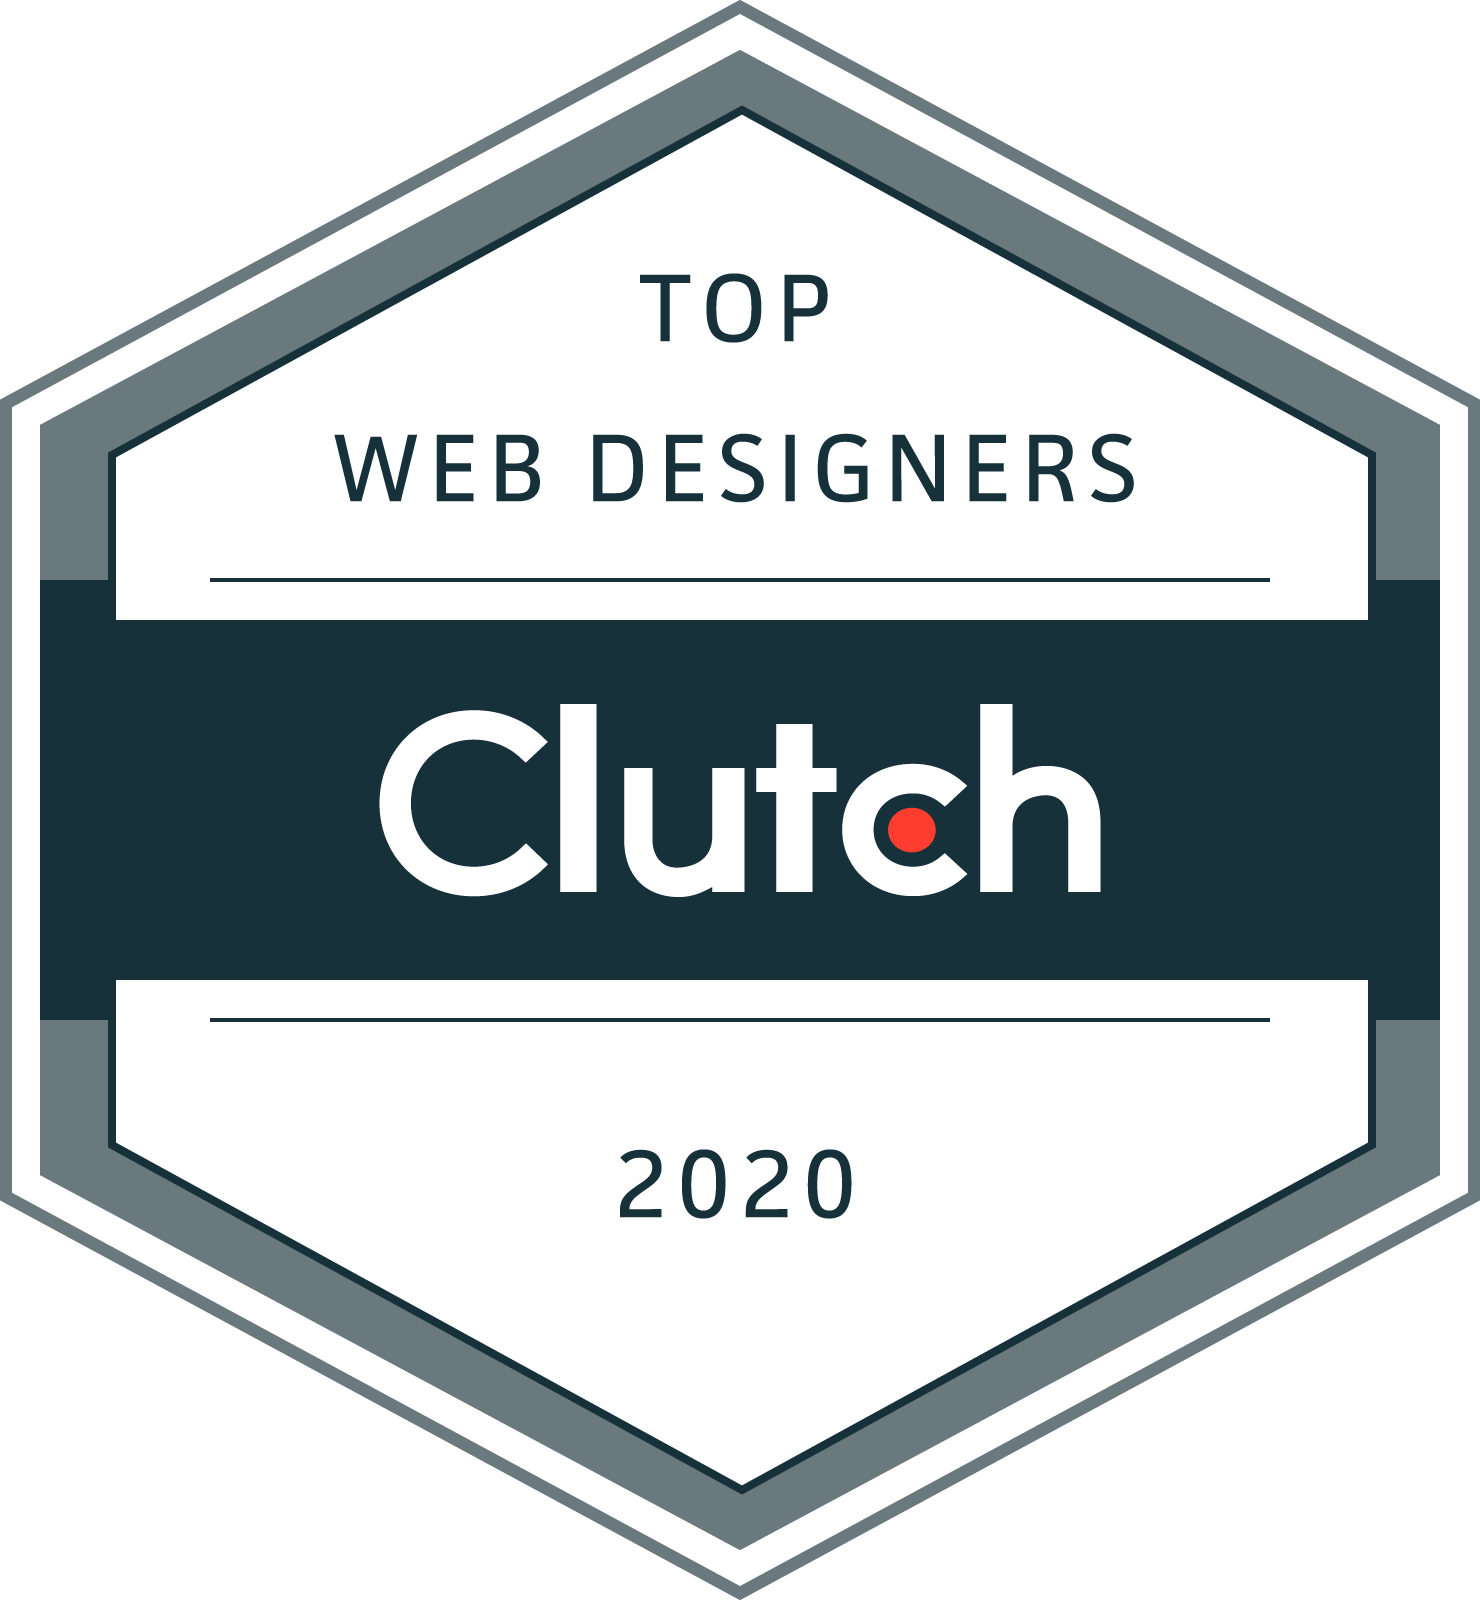 Clutch 2020 award